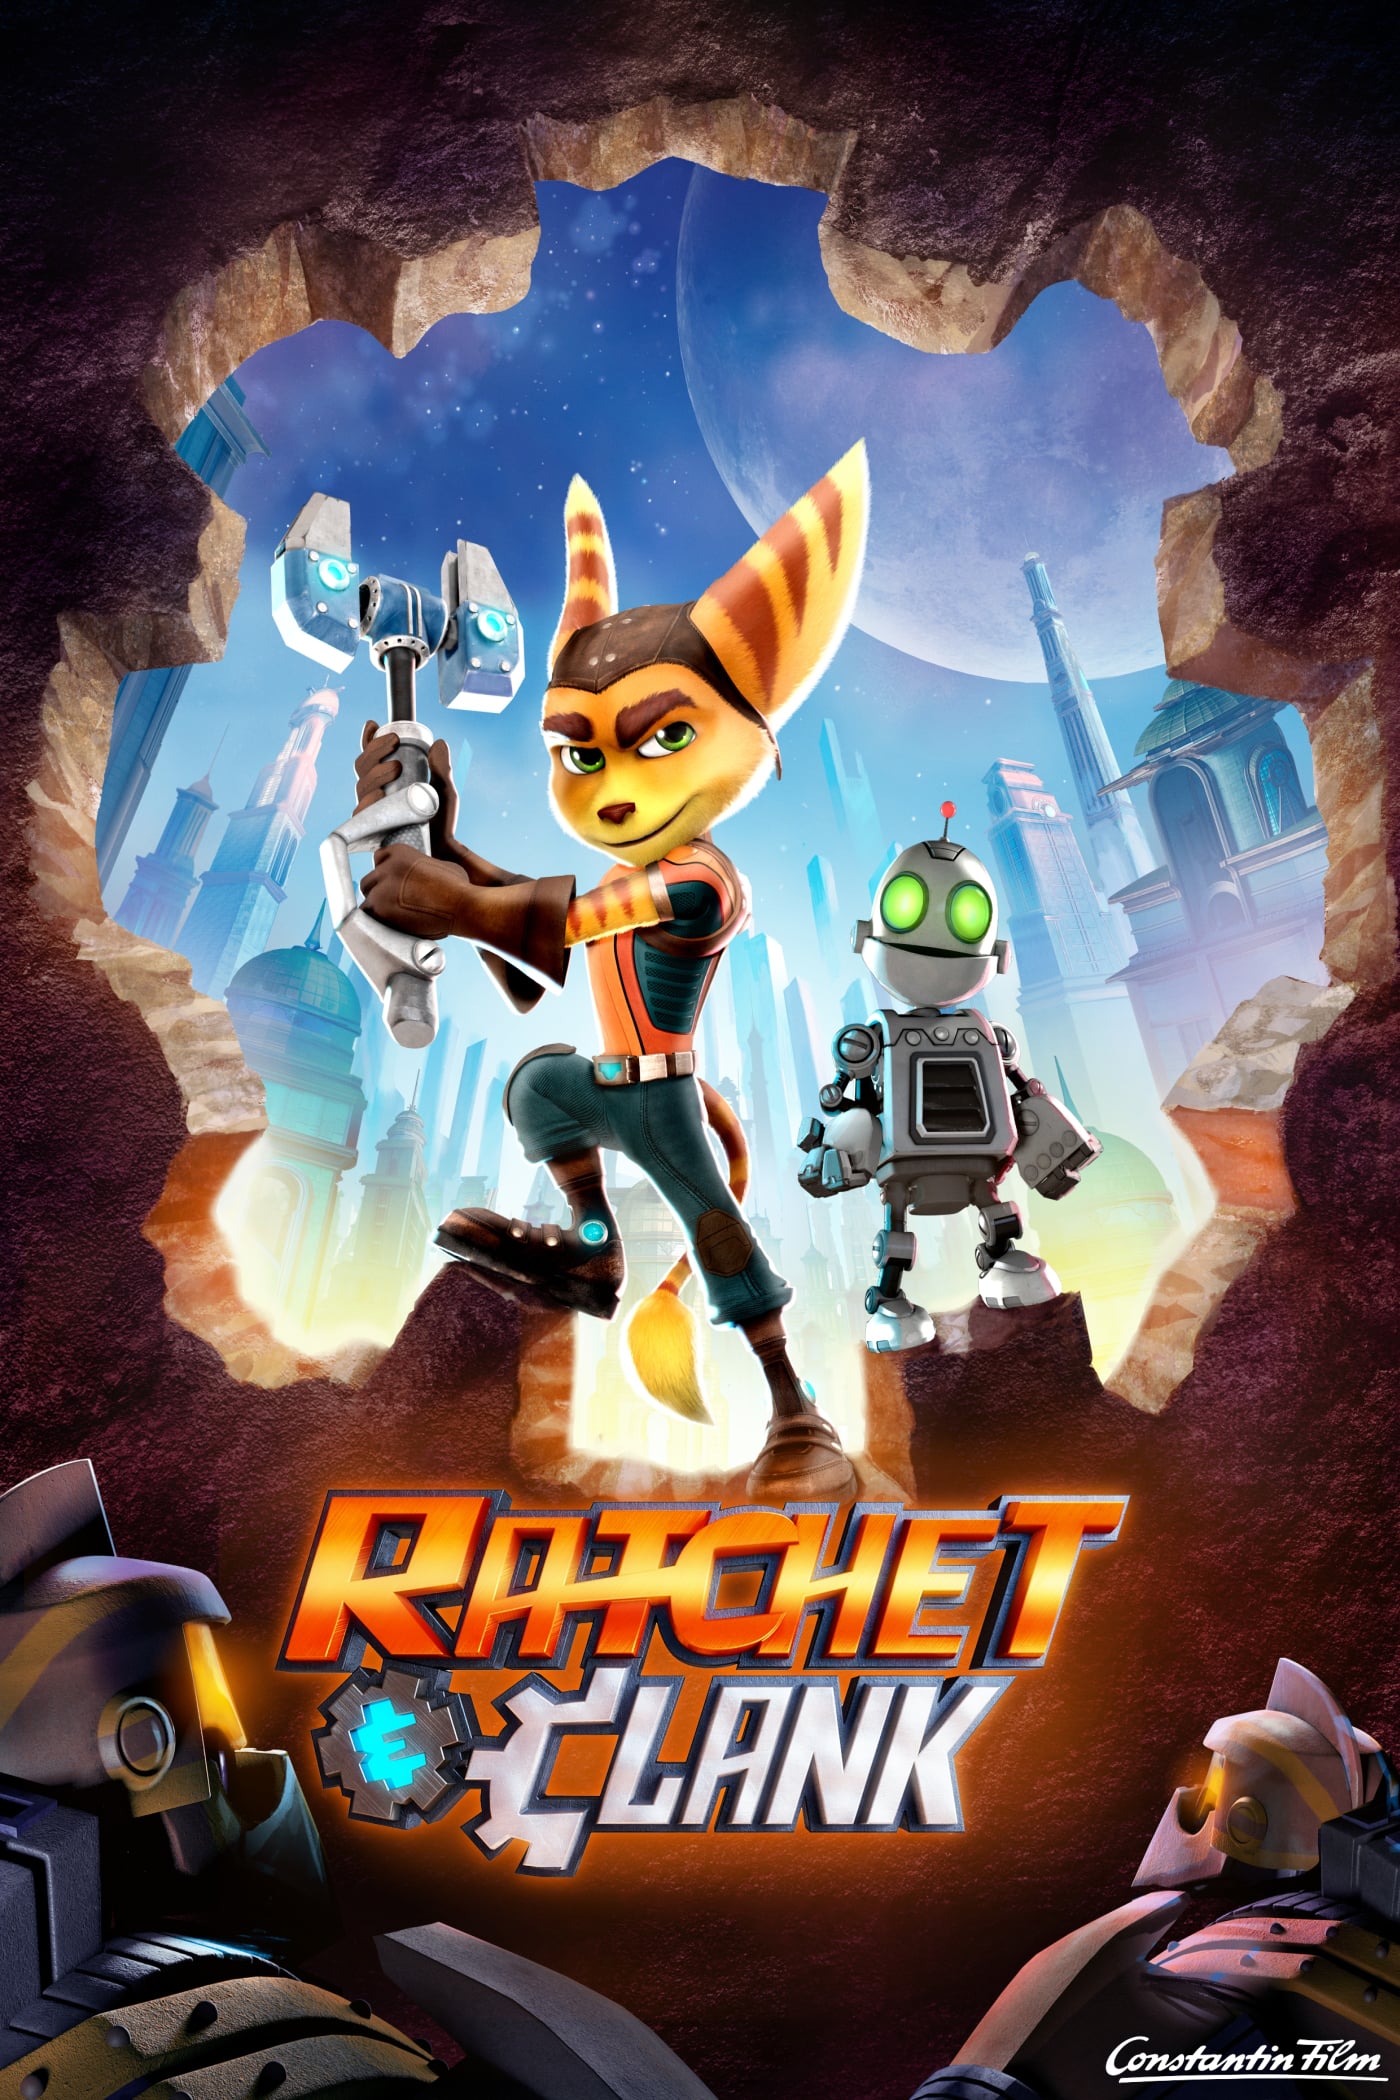 Plakat von "Ratchet & Clank"